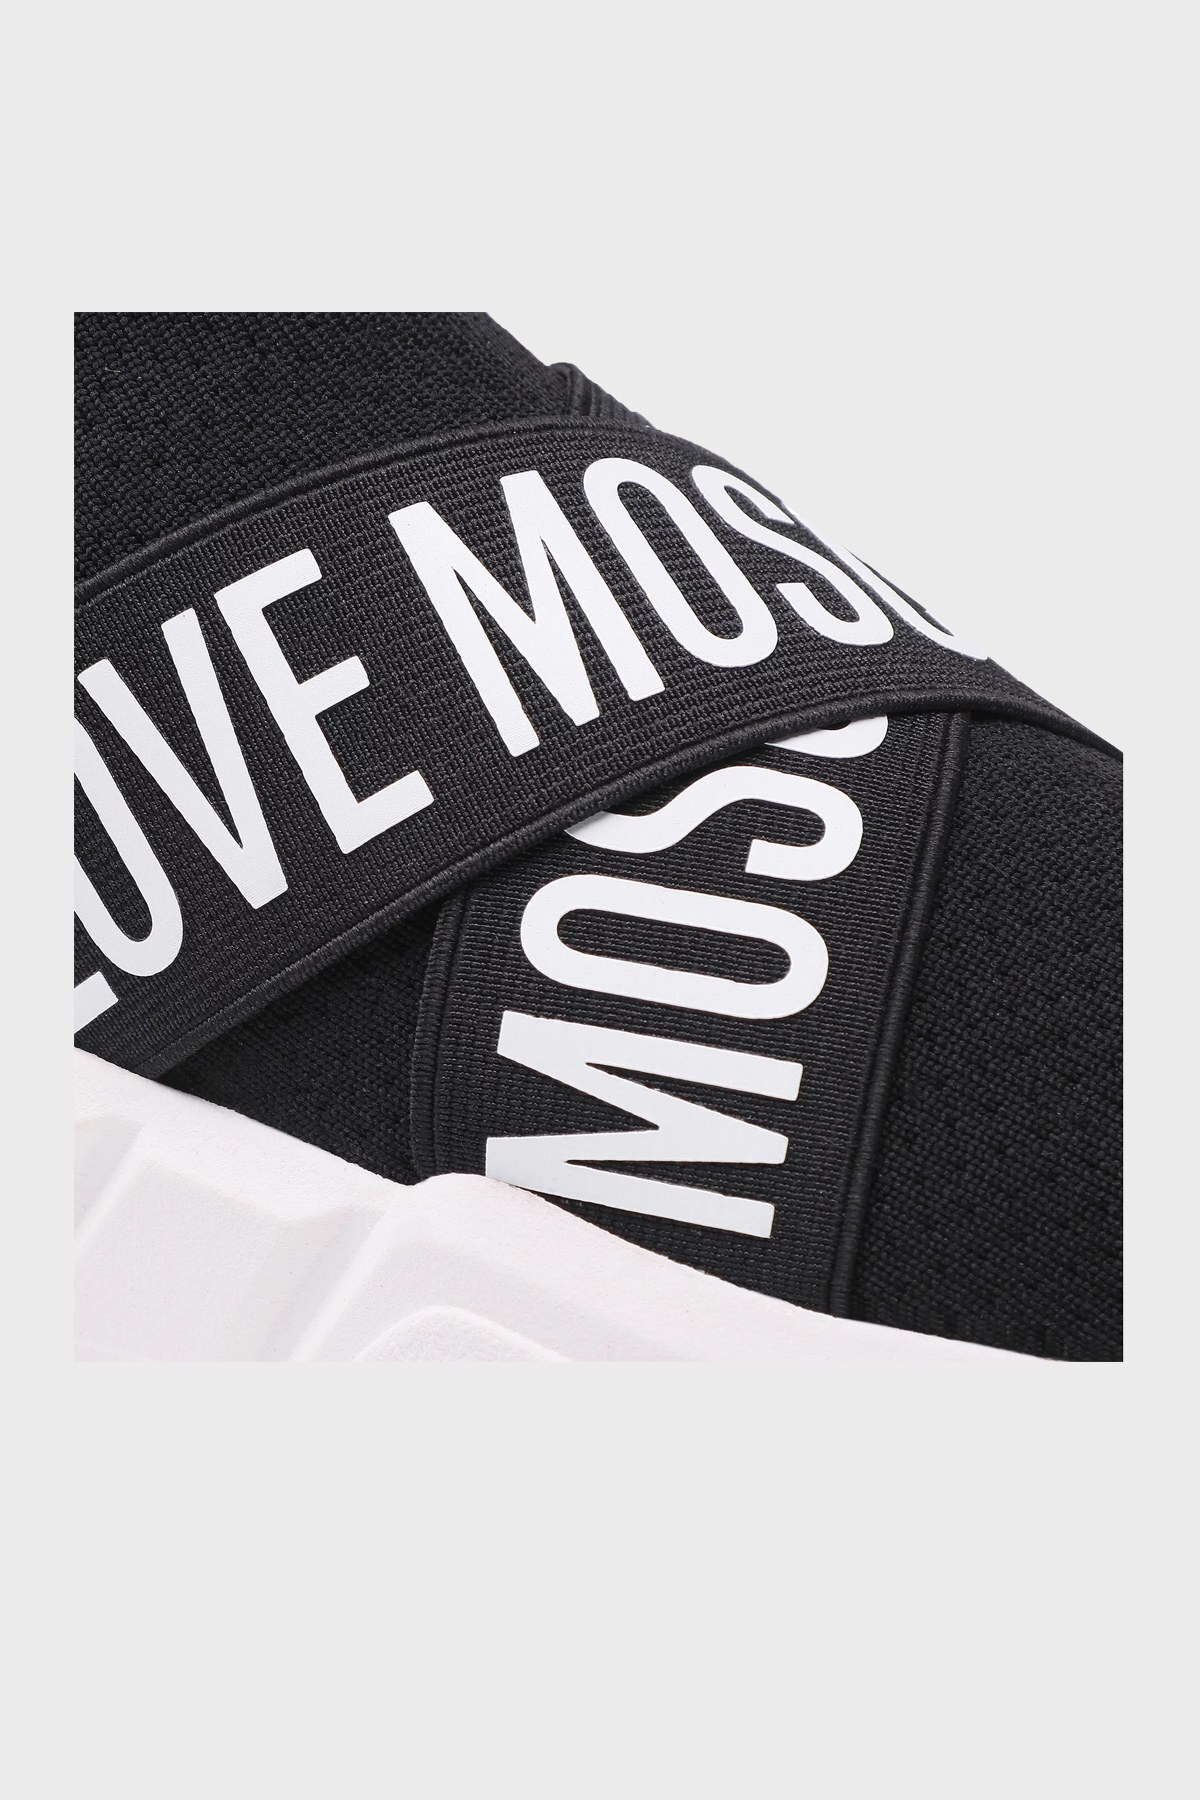 Love Moschino Marka Logolu Sneaker Bayan Ayakkabı S JA15033G1DIZ0000 SİYAH